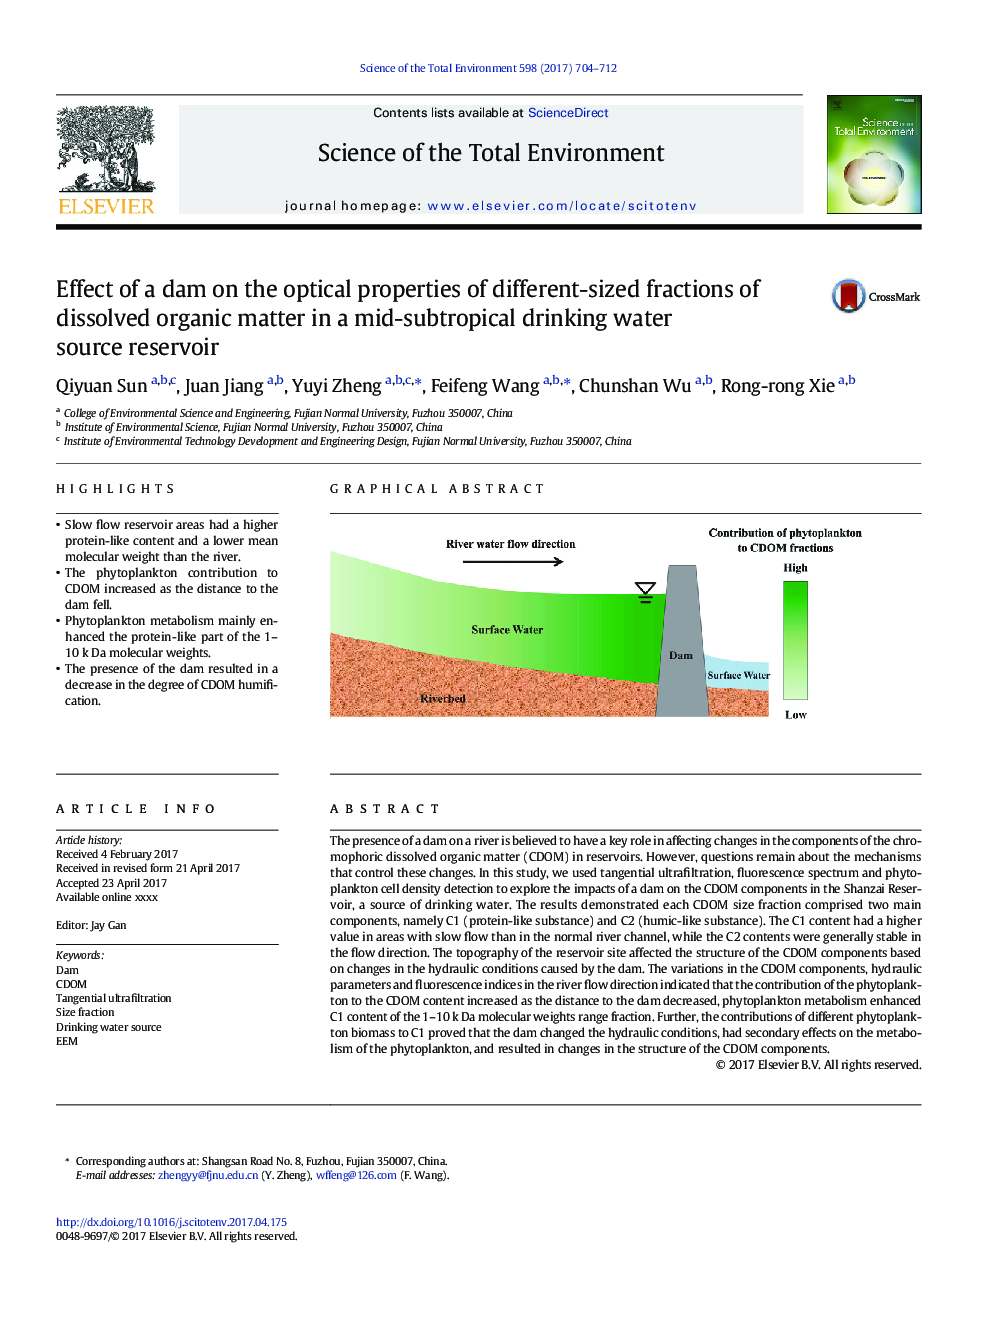 اثر سد بر خواص اپتیکی کسرهای مختلف ماده آلی محلول در یک مخزن منبع آب آشامیدنی نیمه گرمسیری 